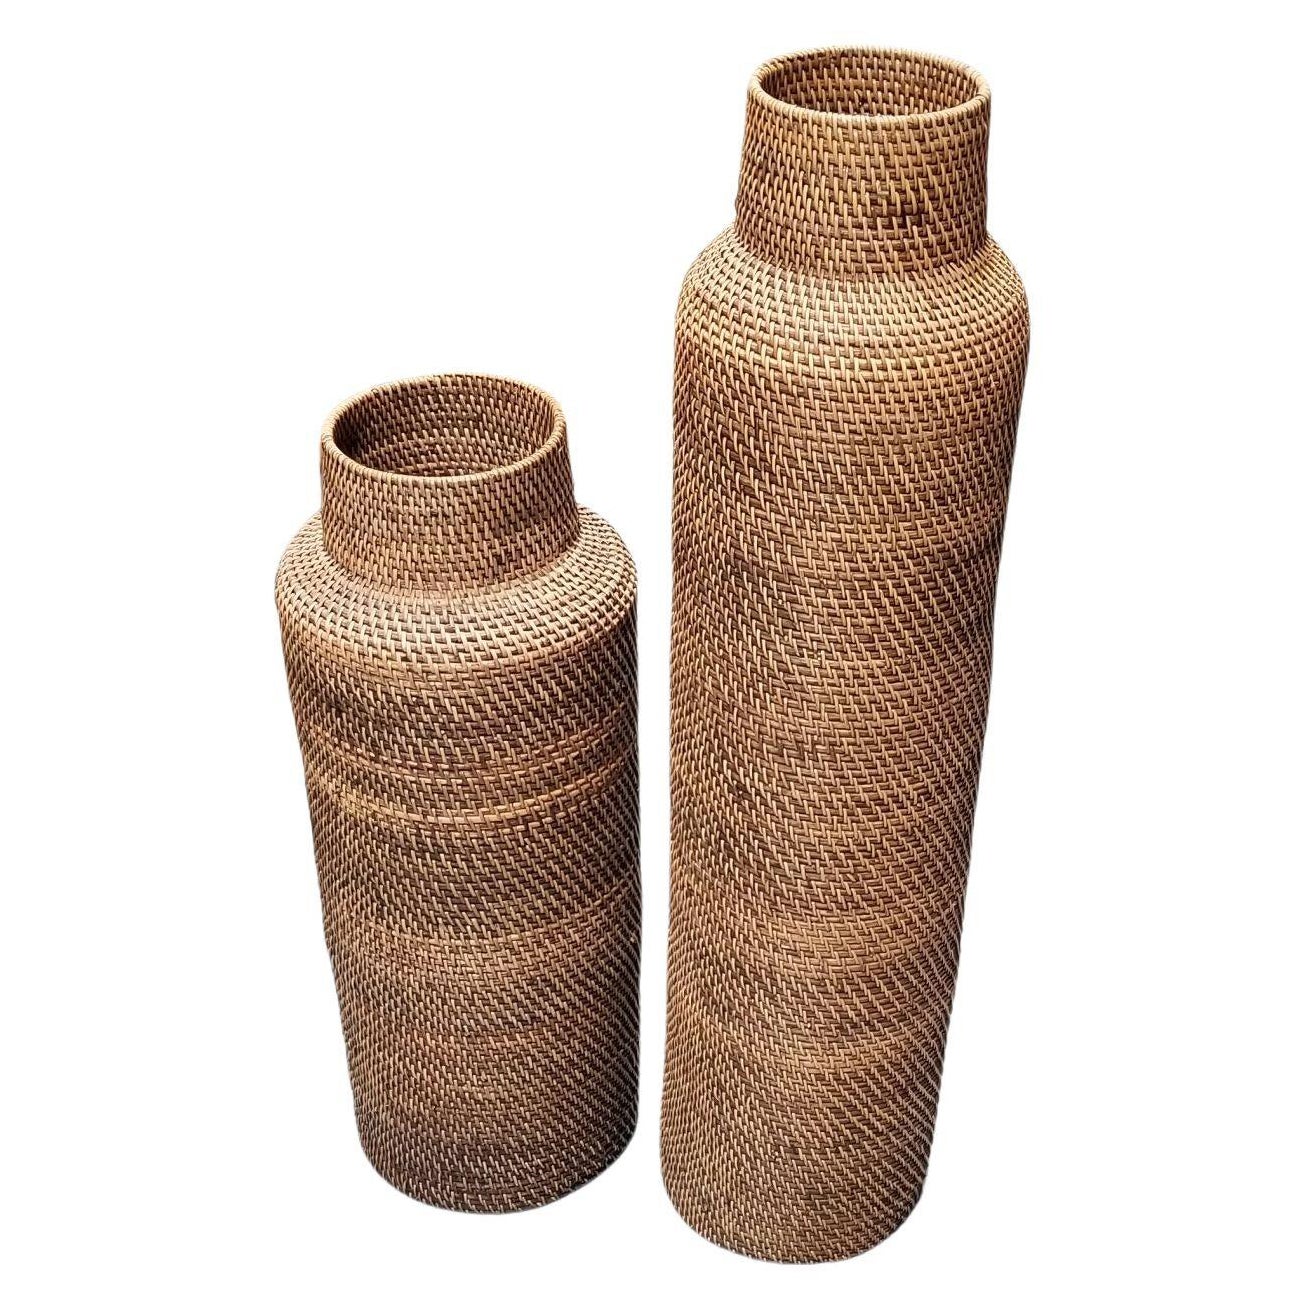 Restaurierte Reed Rattan Wicker Dekorative Vasen Gabriella Crespi Styled - Paar von 2